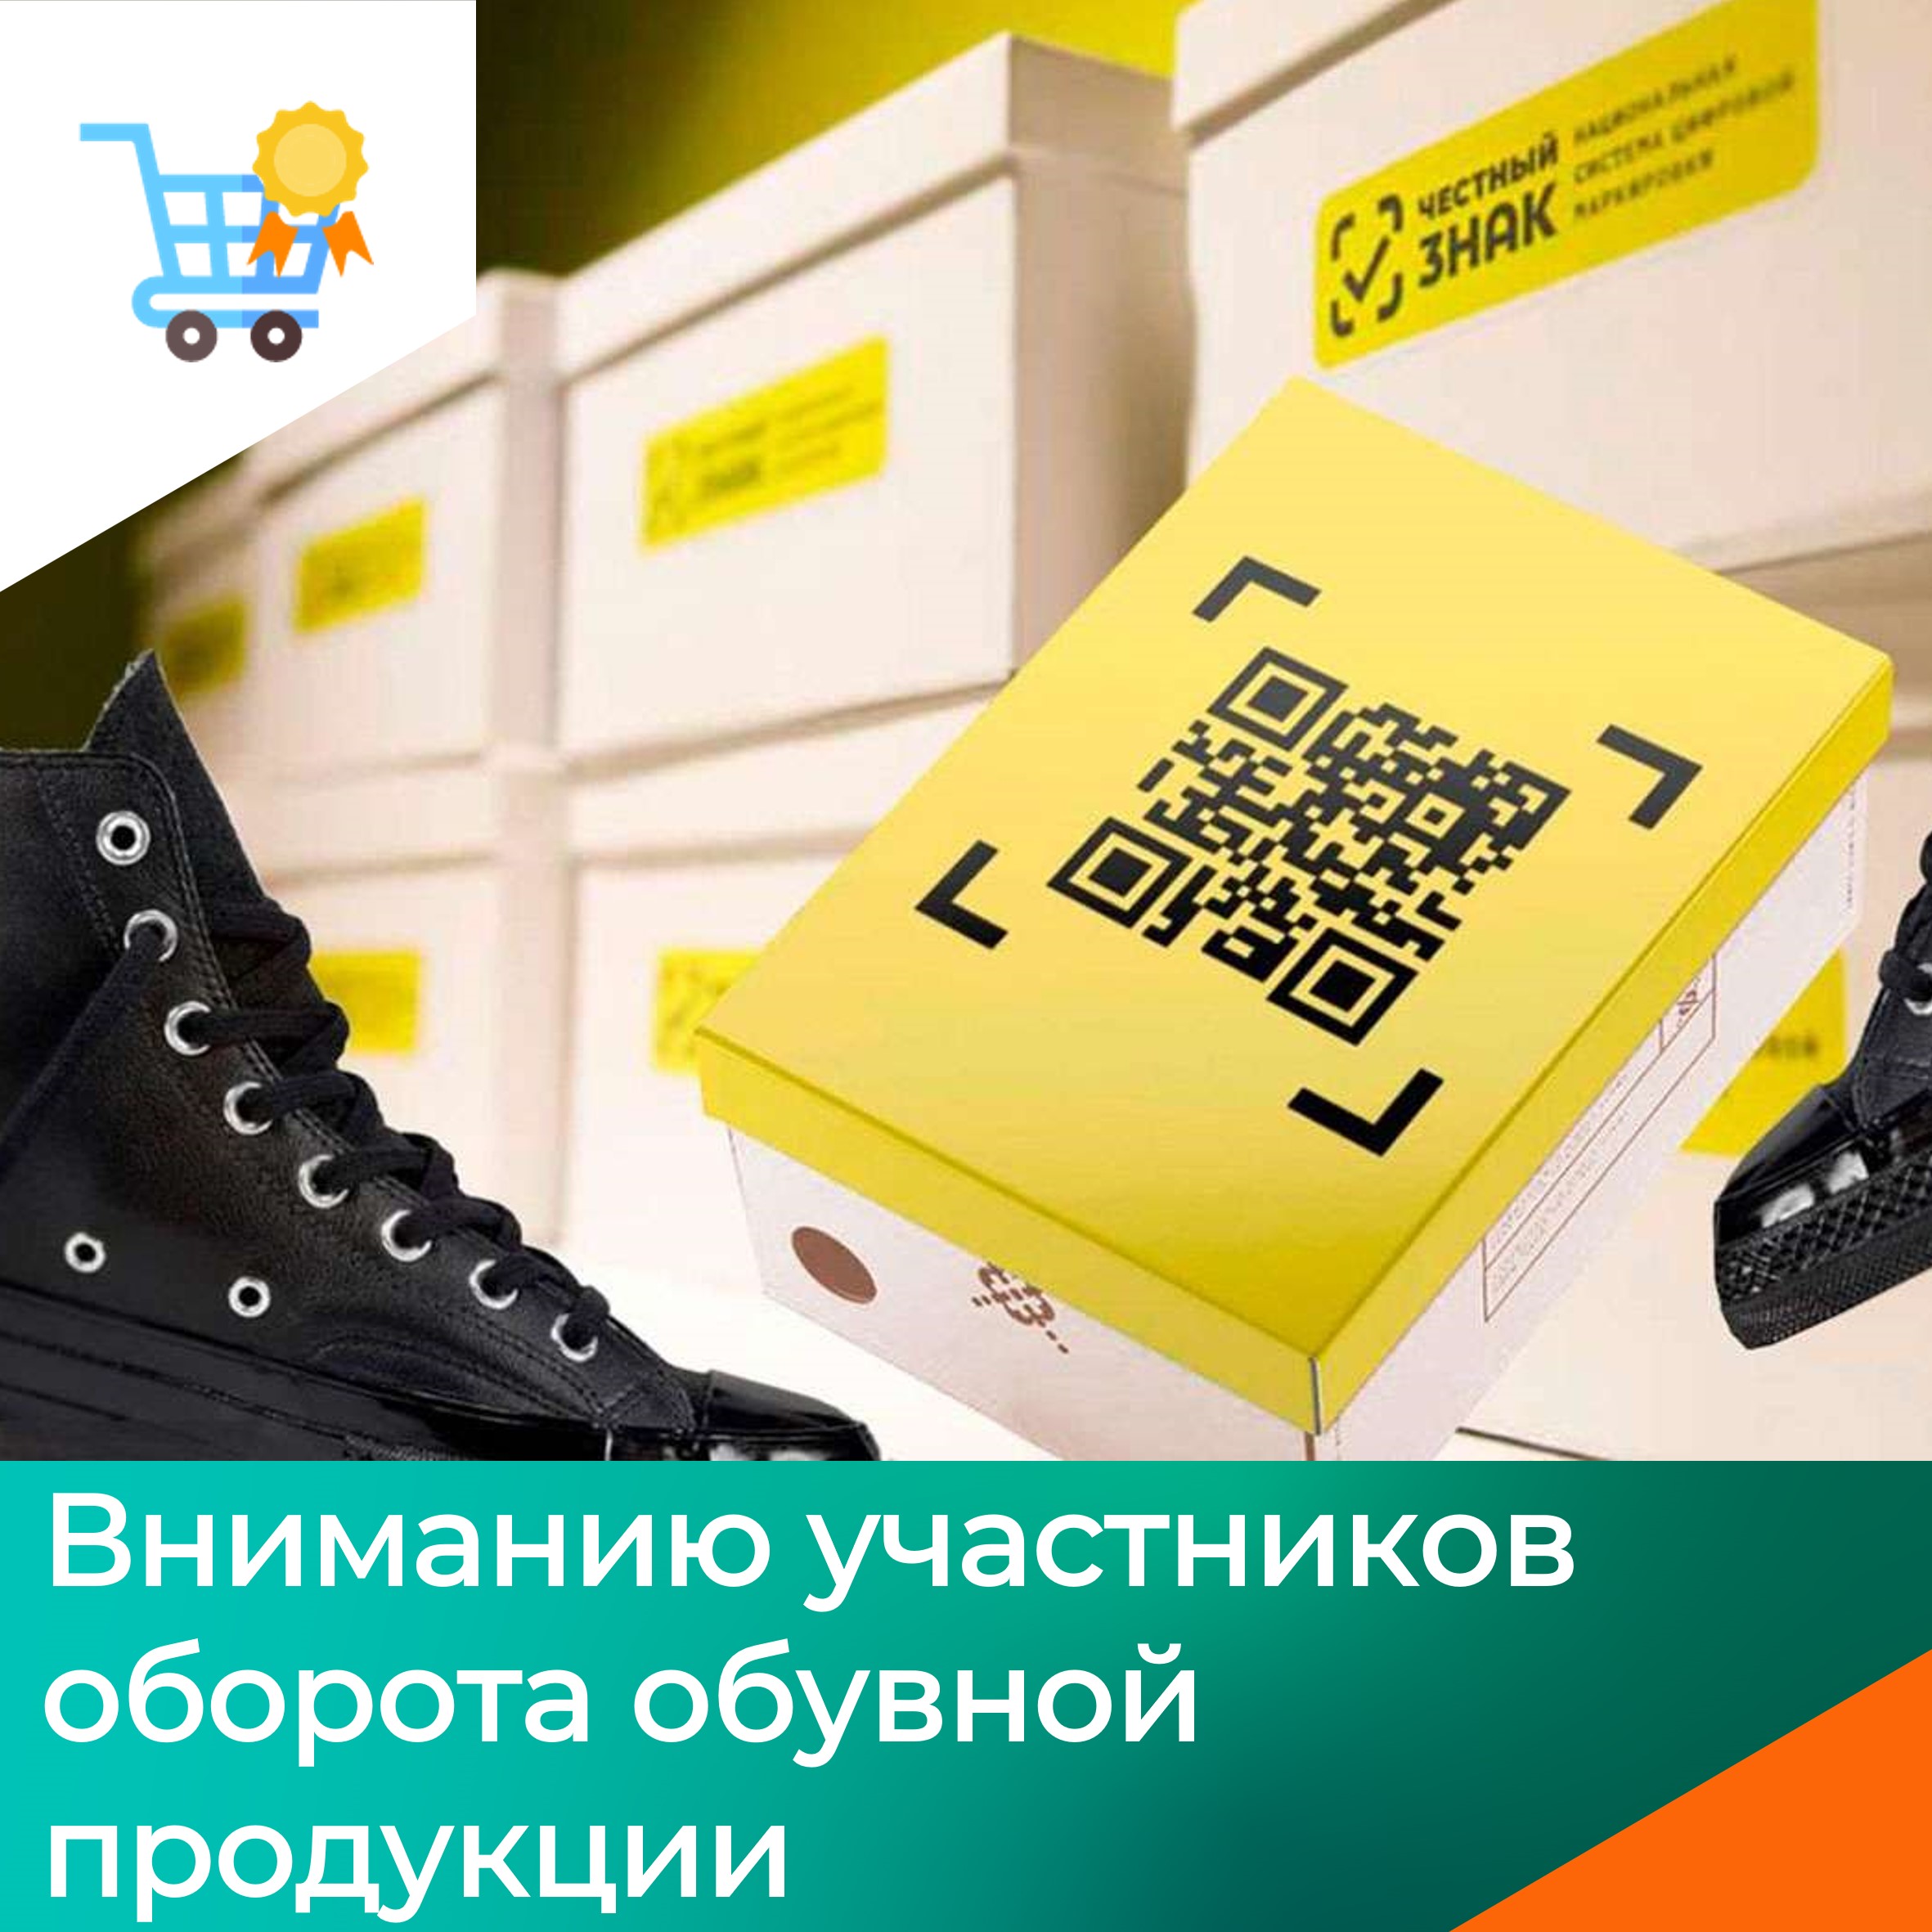 Установлена обязанность участников оборота обувных товаров до 31 марта 2023 года зарегистрировать нереализованные остатки обувных товаров и осуществить их перемаркировку